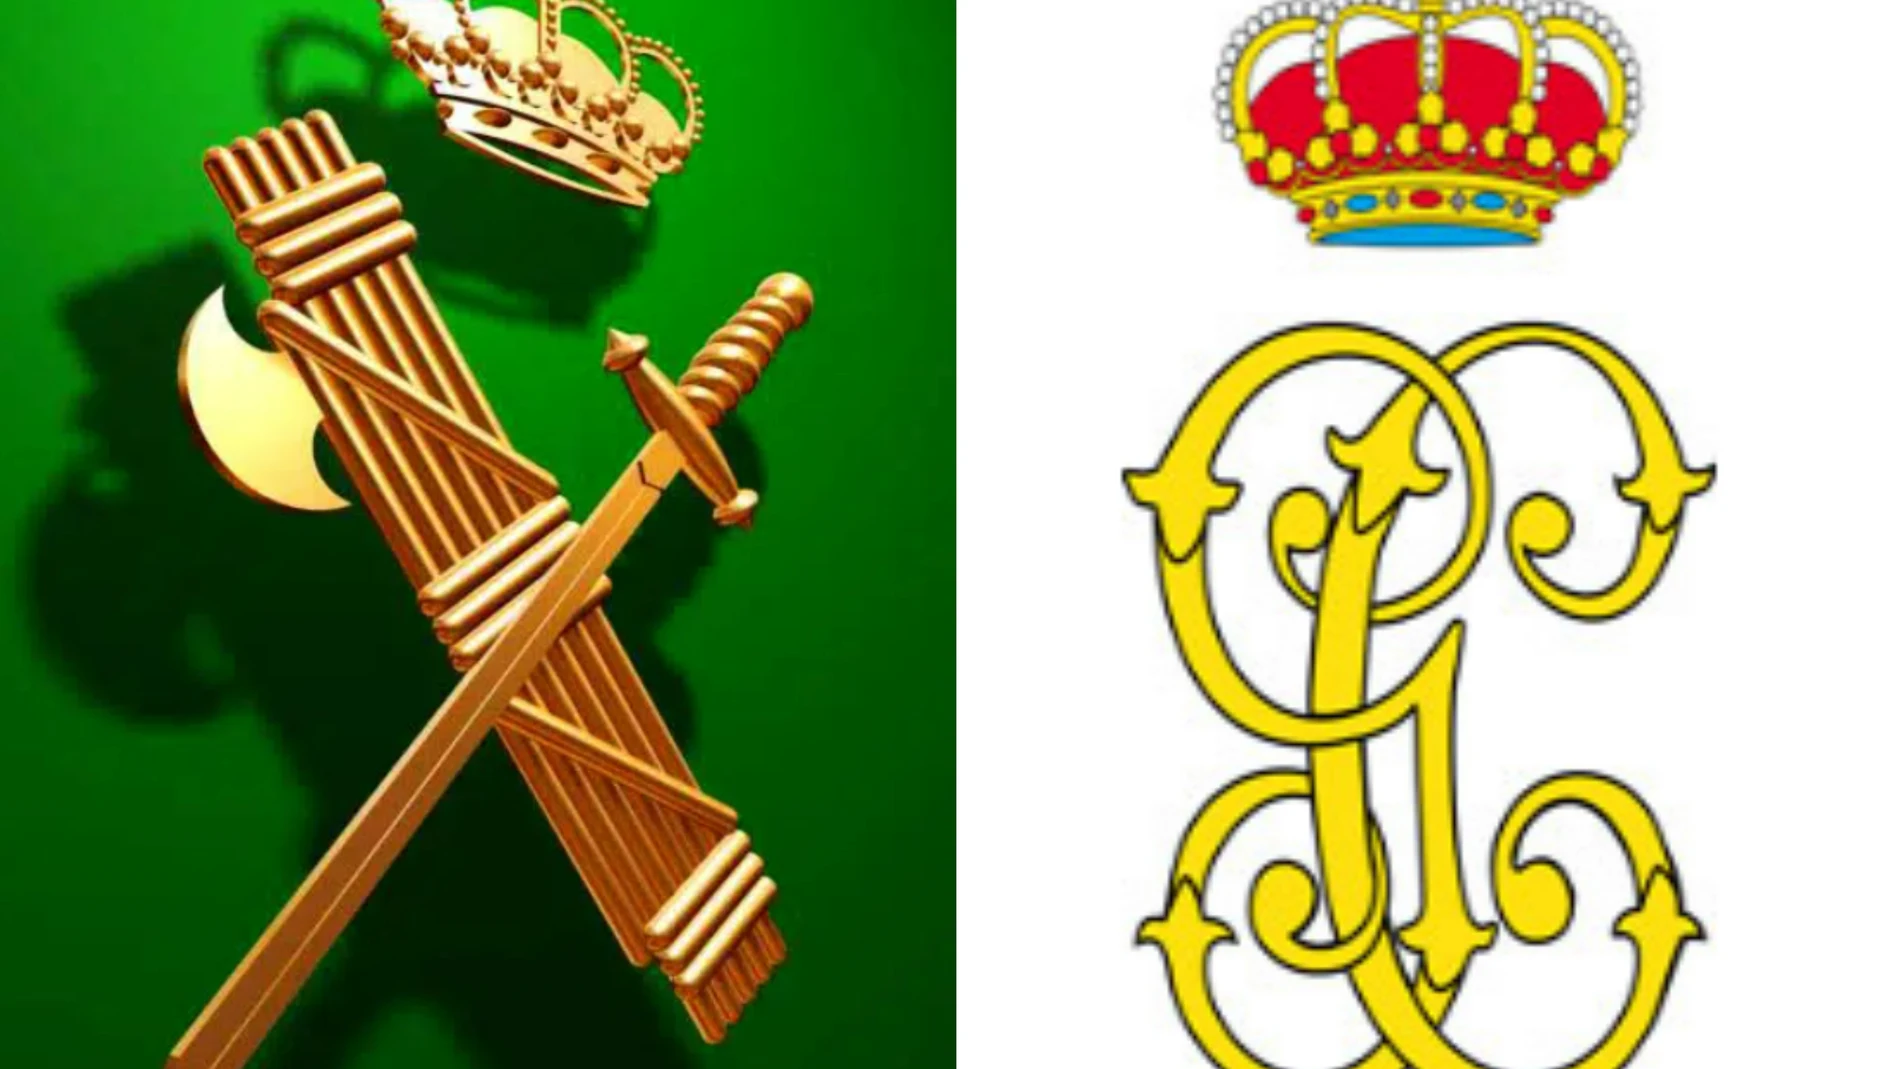 El emblema actual de la Guardia Civil (1943) frente al escudo original (1844)